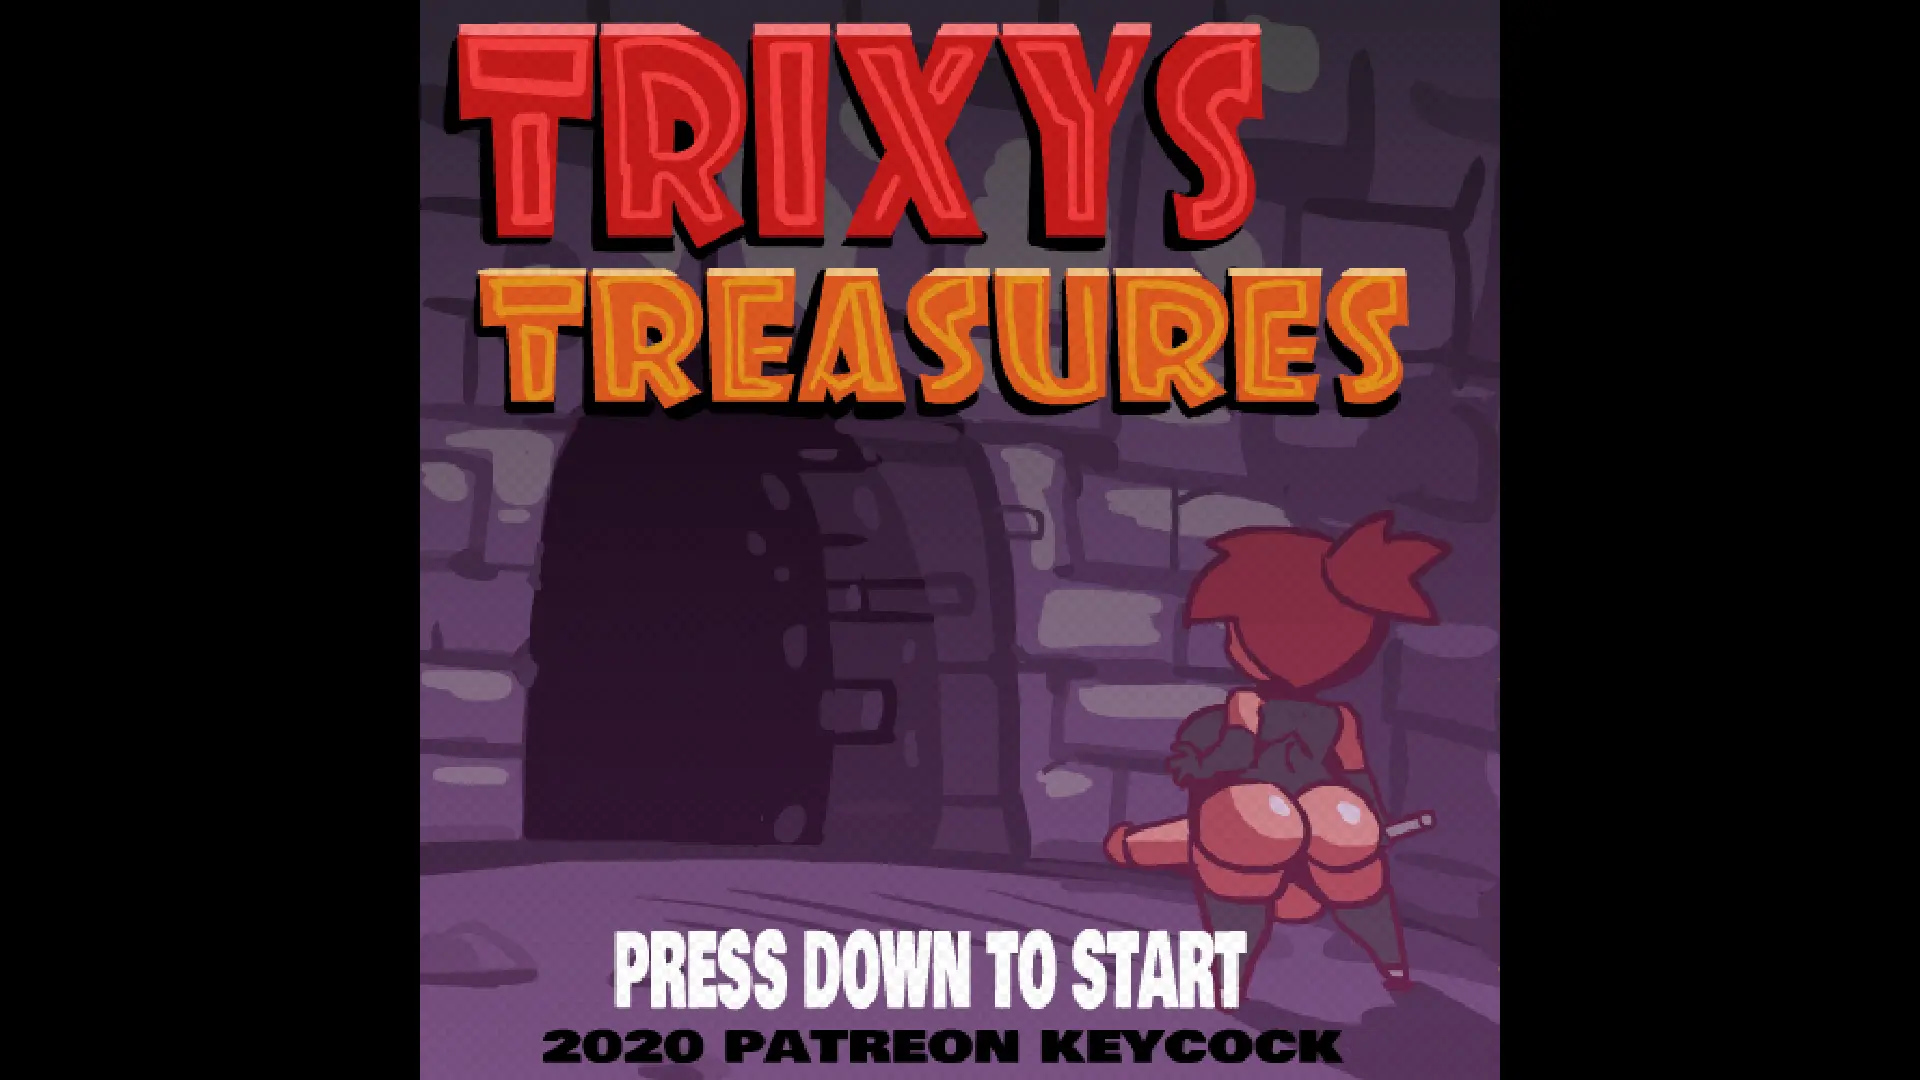 Trixys Treasures main image